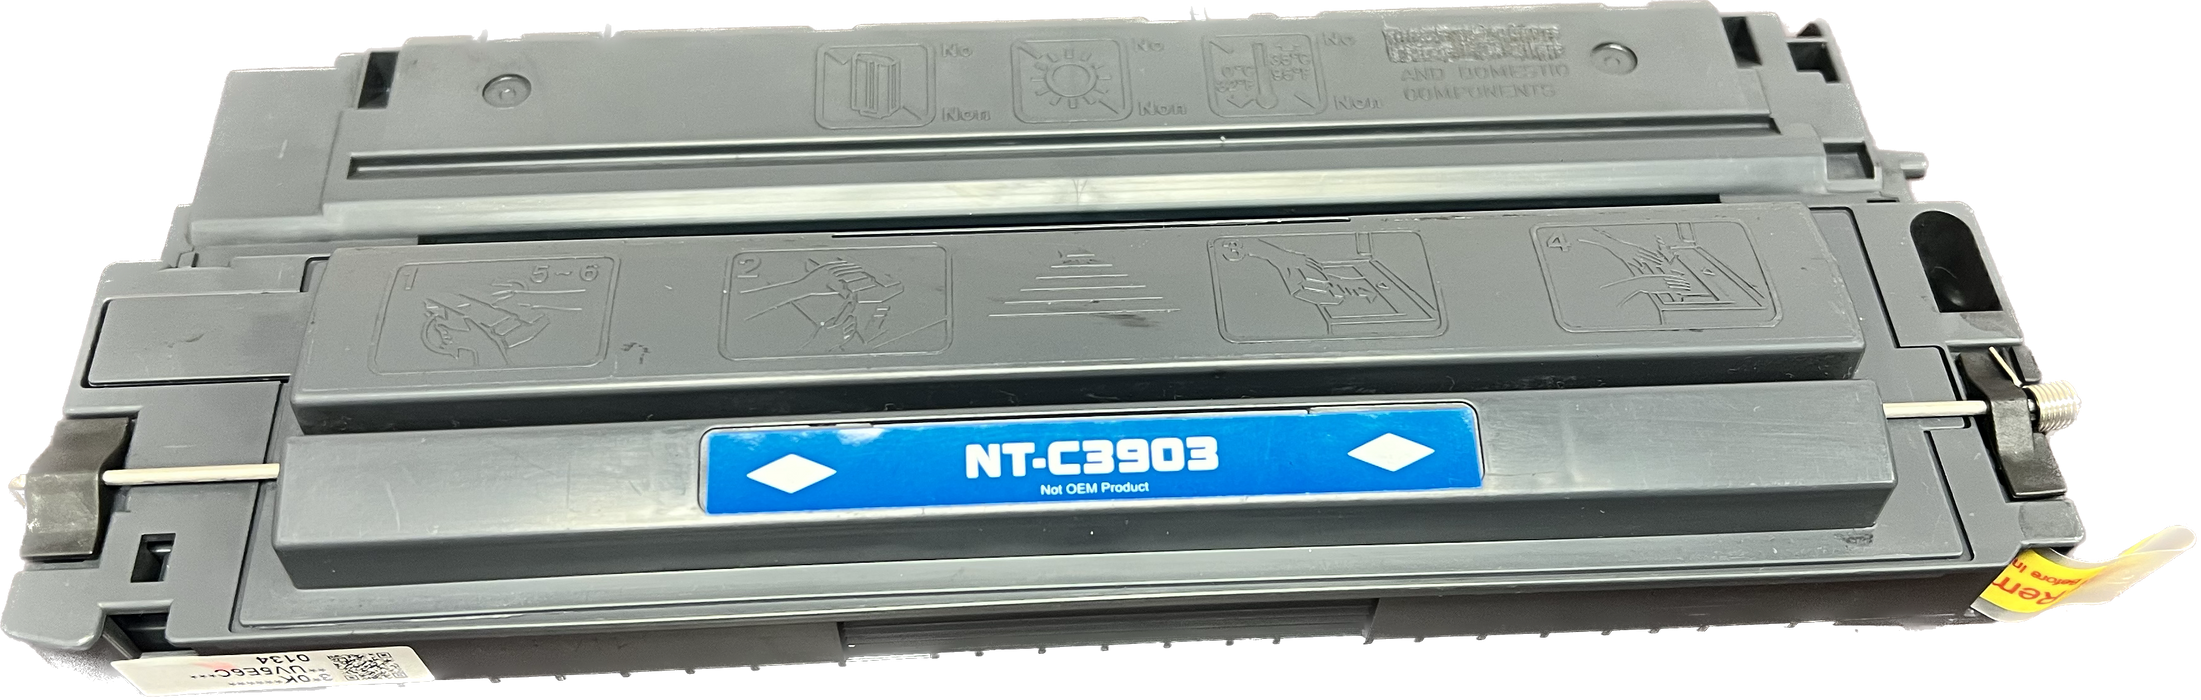 HP Compatible Black Toner Cartridge | NT-C3903F